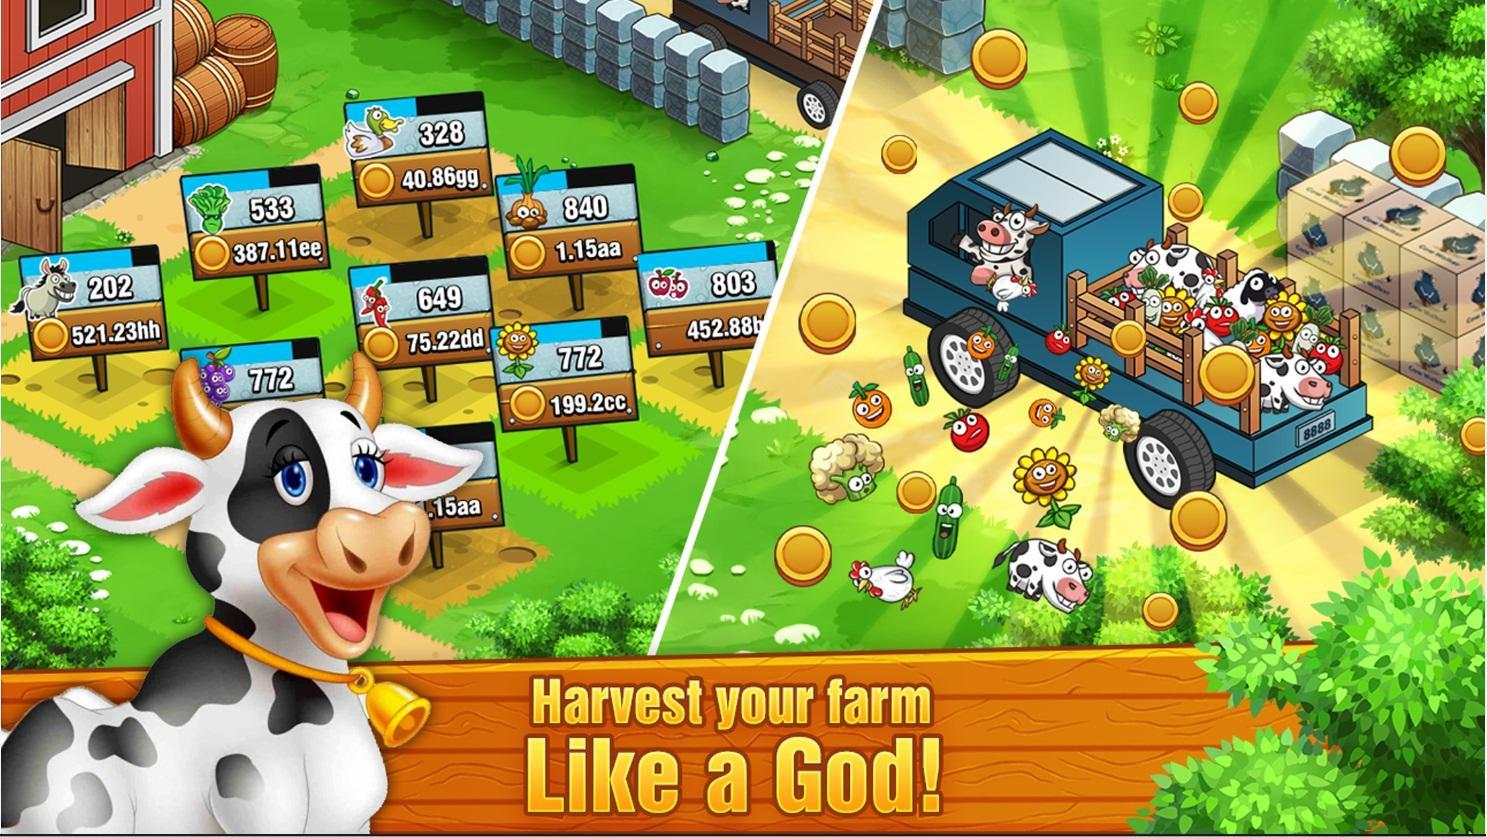 Игра веселая ферма на андроид